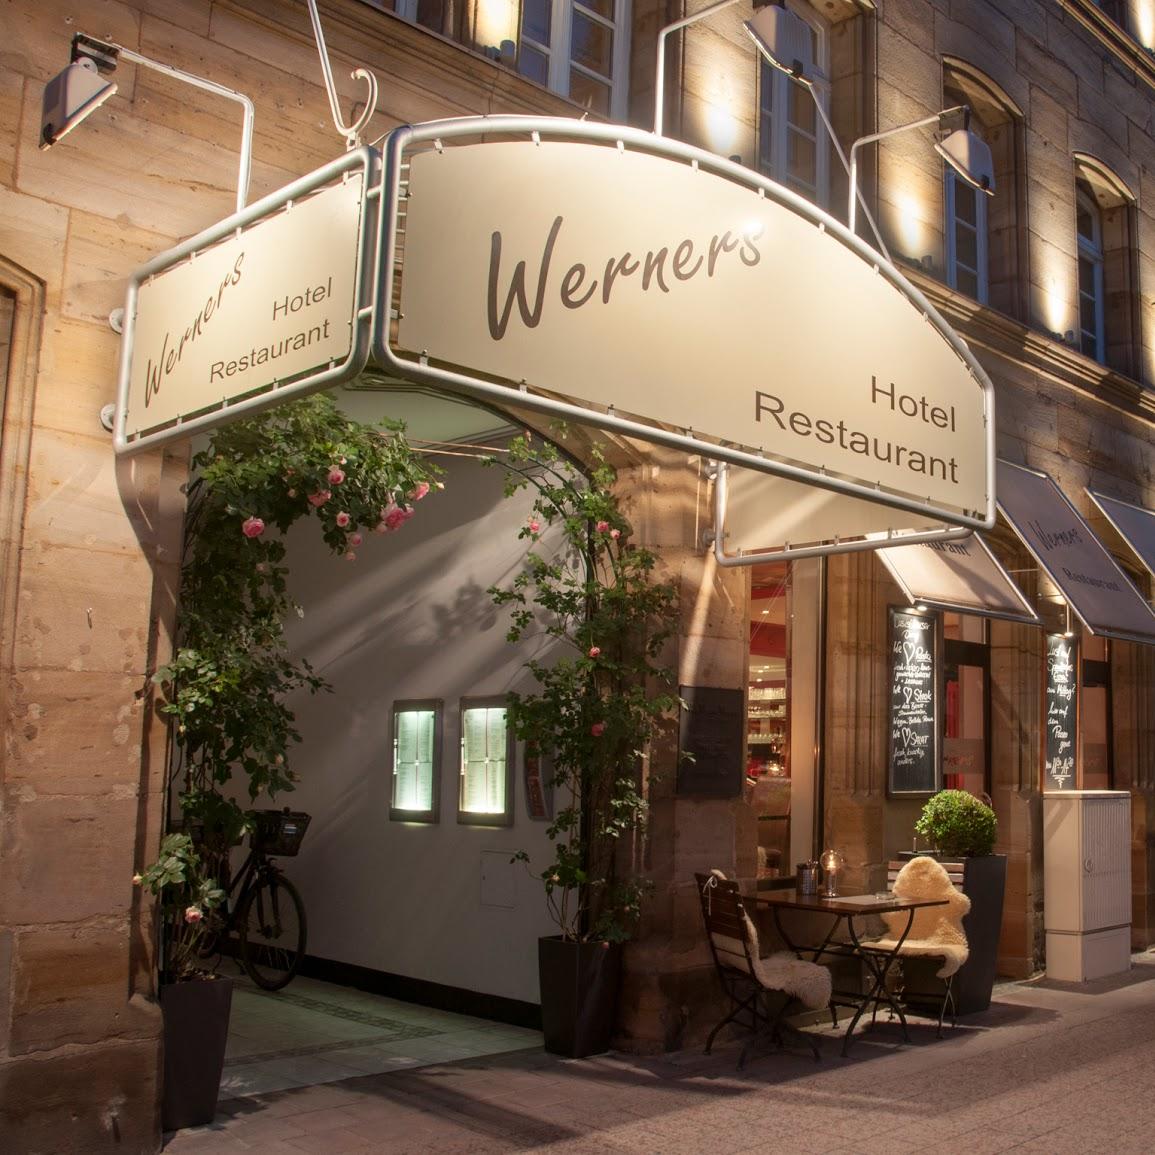 Restaurant "Werners Boutique Hotel" in Fürth